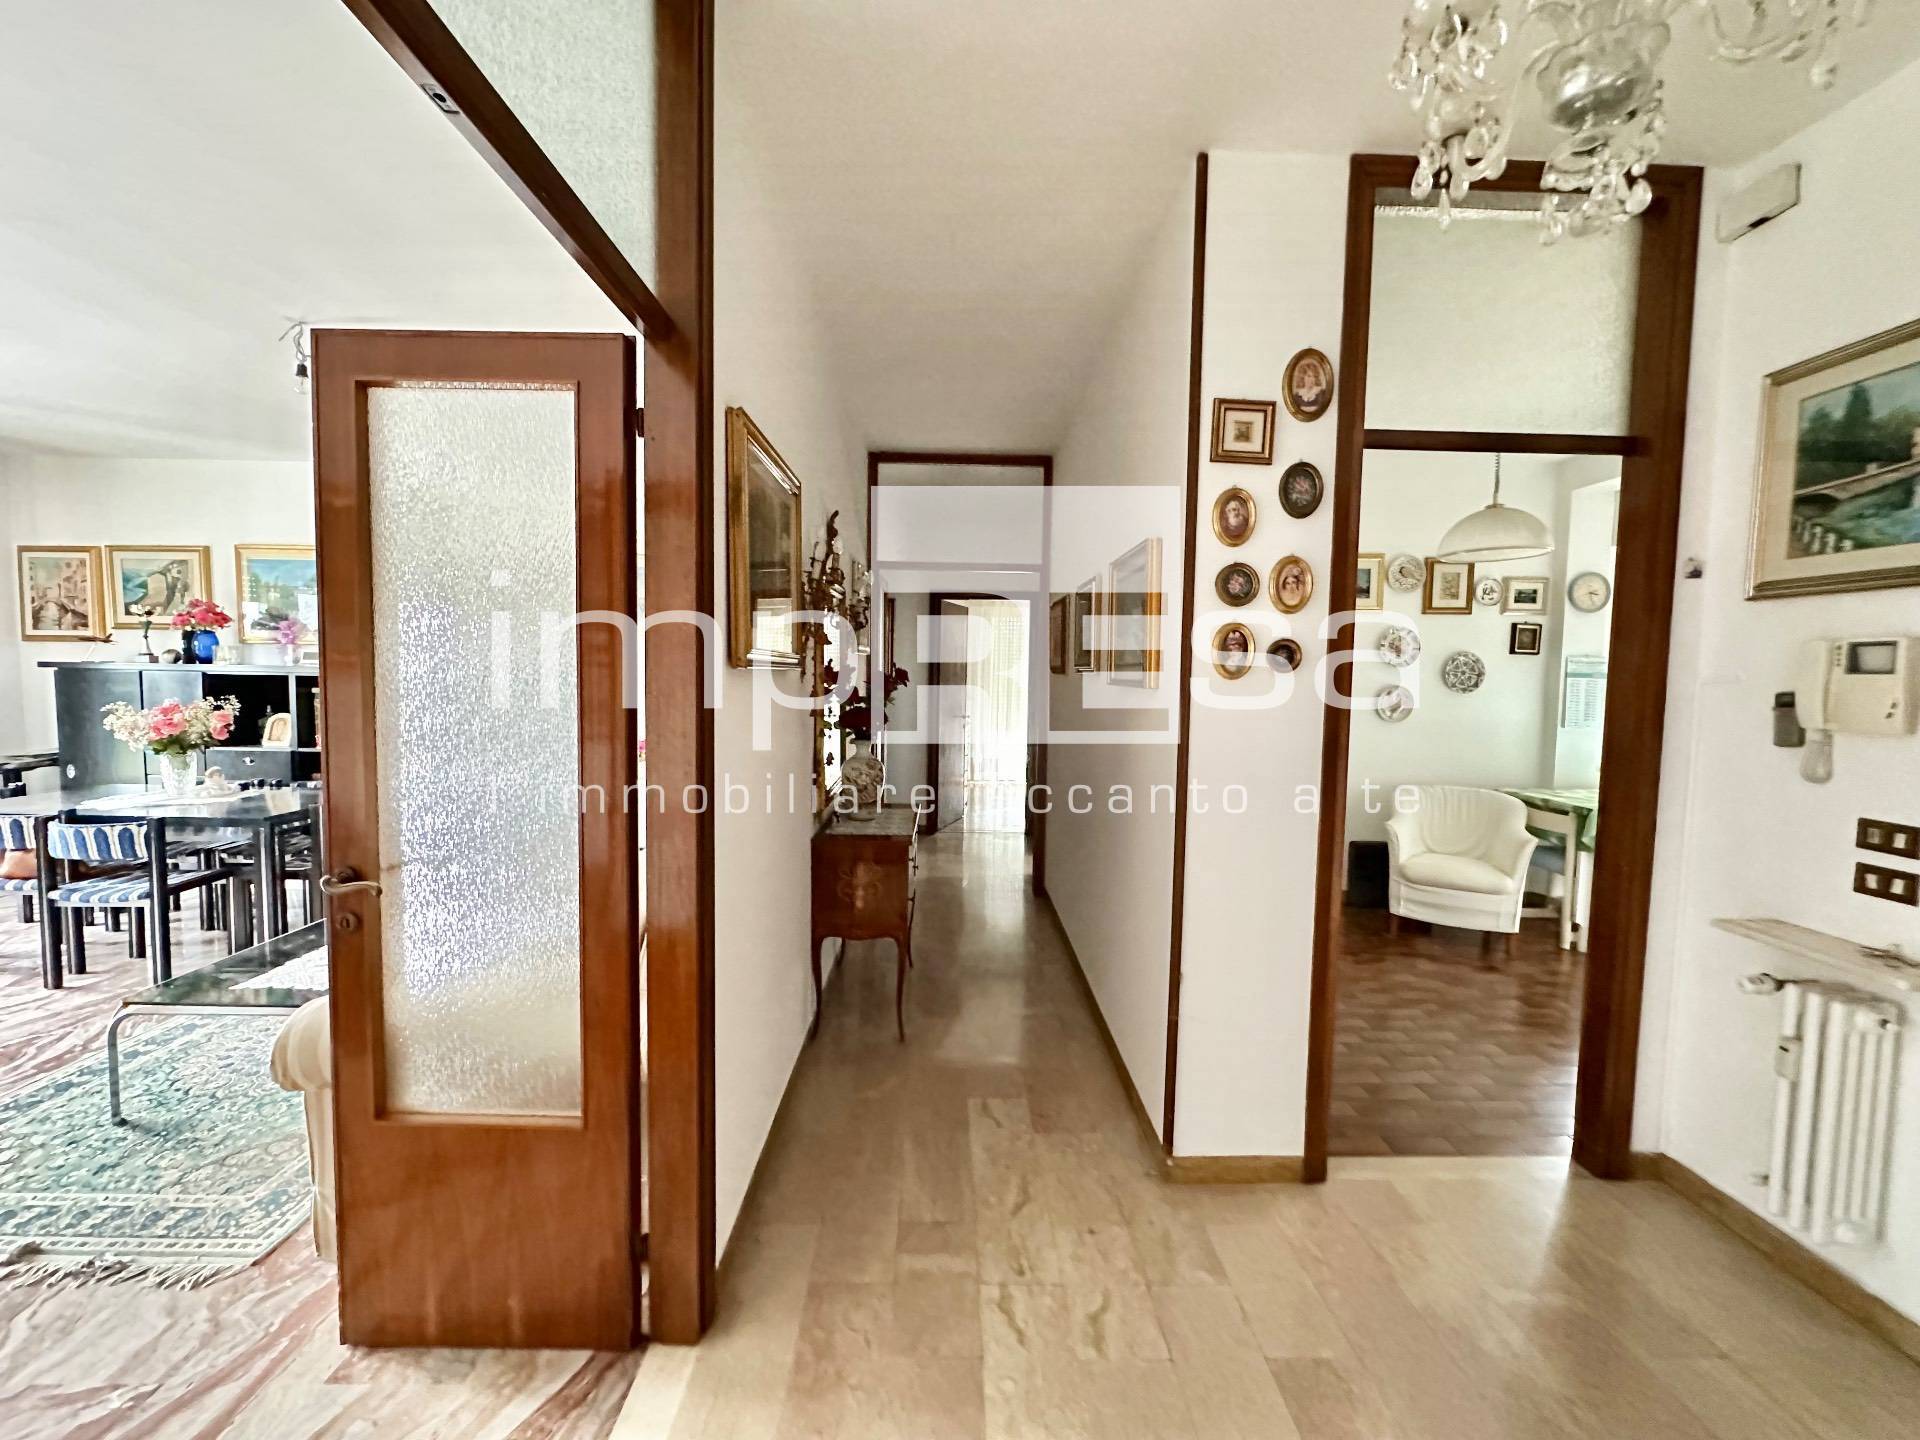 Appartamento in vendita a Treviso, 8 locali, zona Località: FuoriMura, prezzo € 233.000 | PortaleAgenzieImmobiliari.it